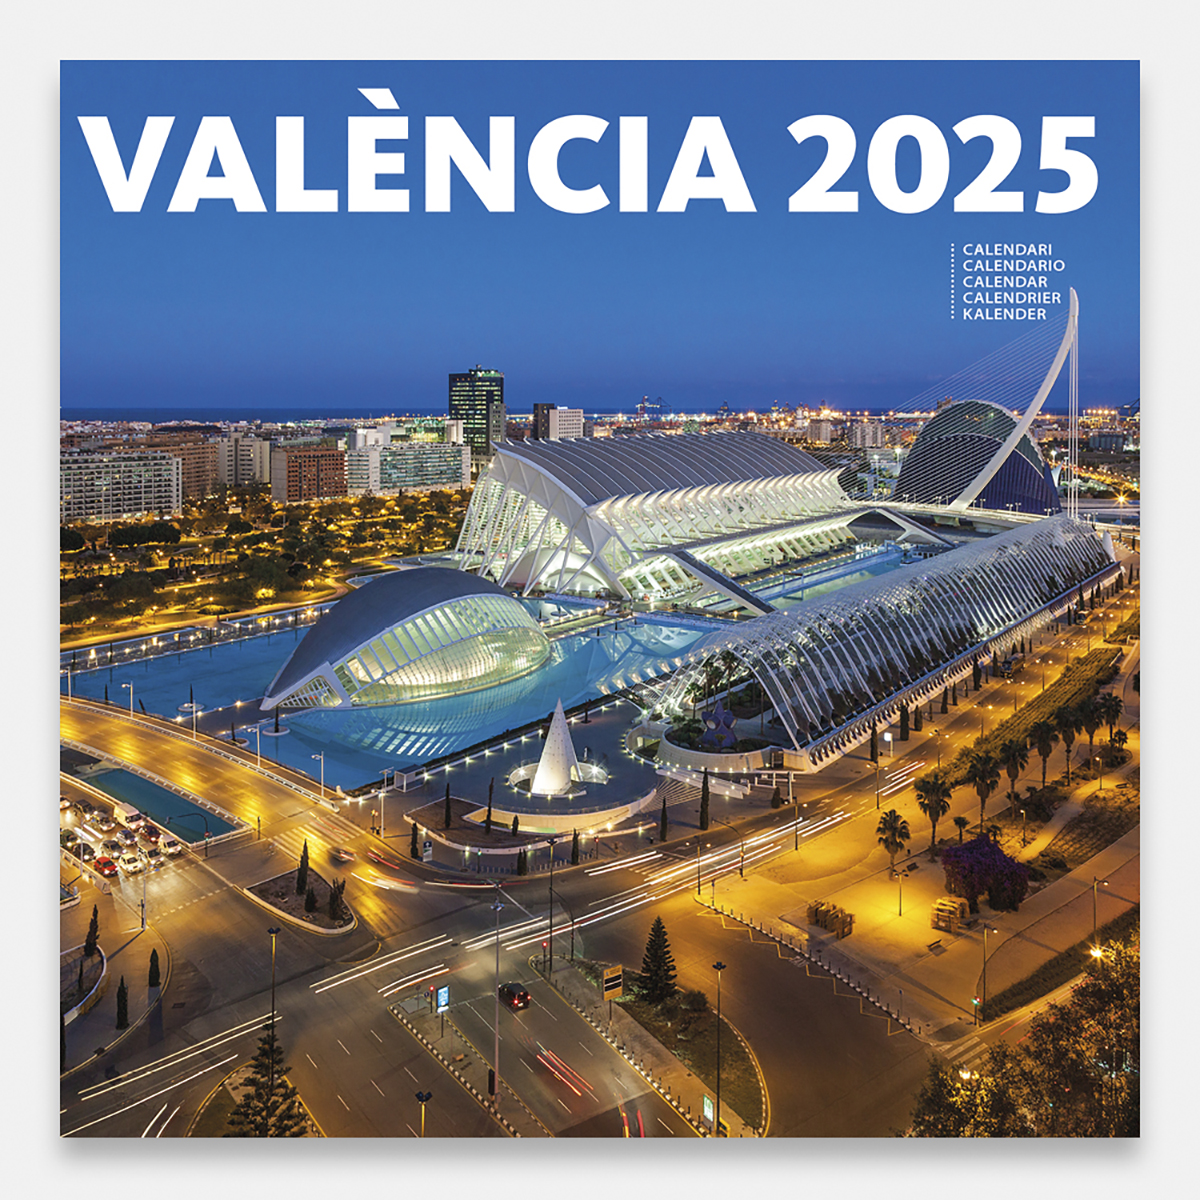 Calendrier 2025 València 25valg calendario pared 2025 valencia